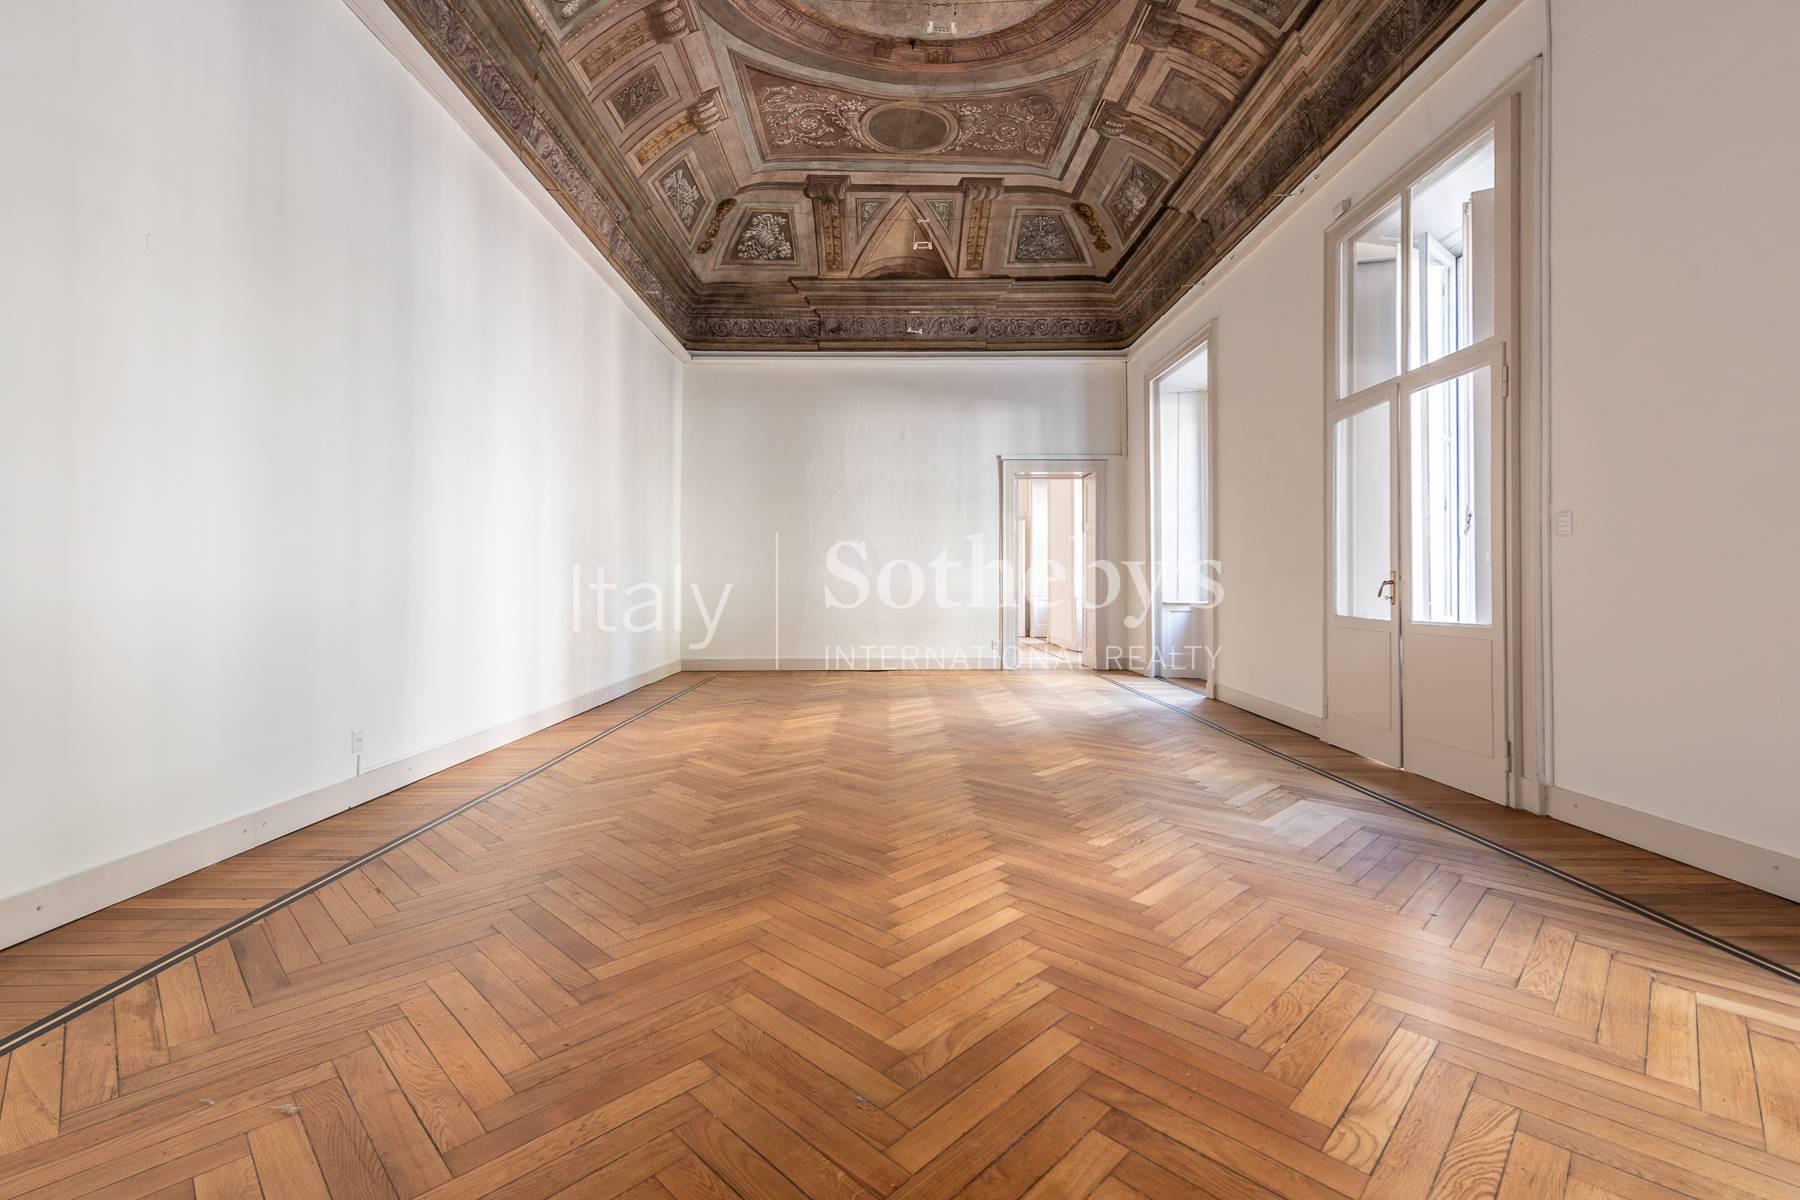 Eine repräsentative Immobilie im Herzen der historischen Altstadt von Mailand - 3